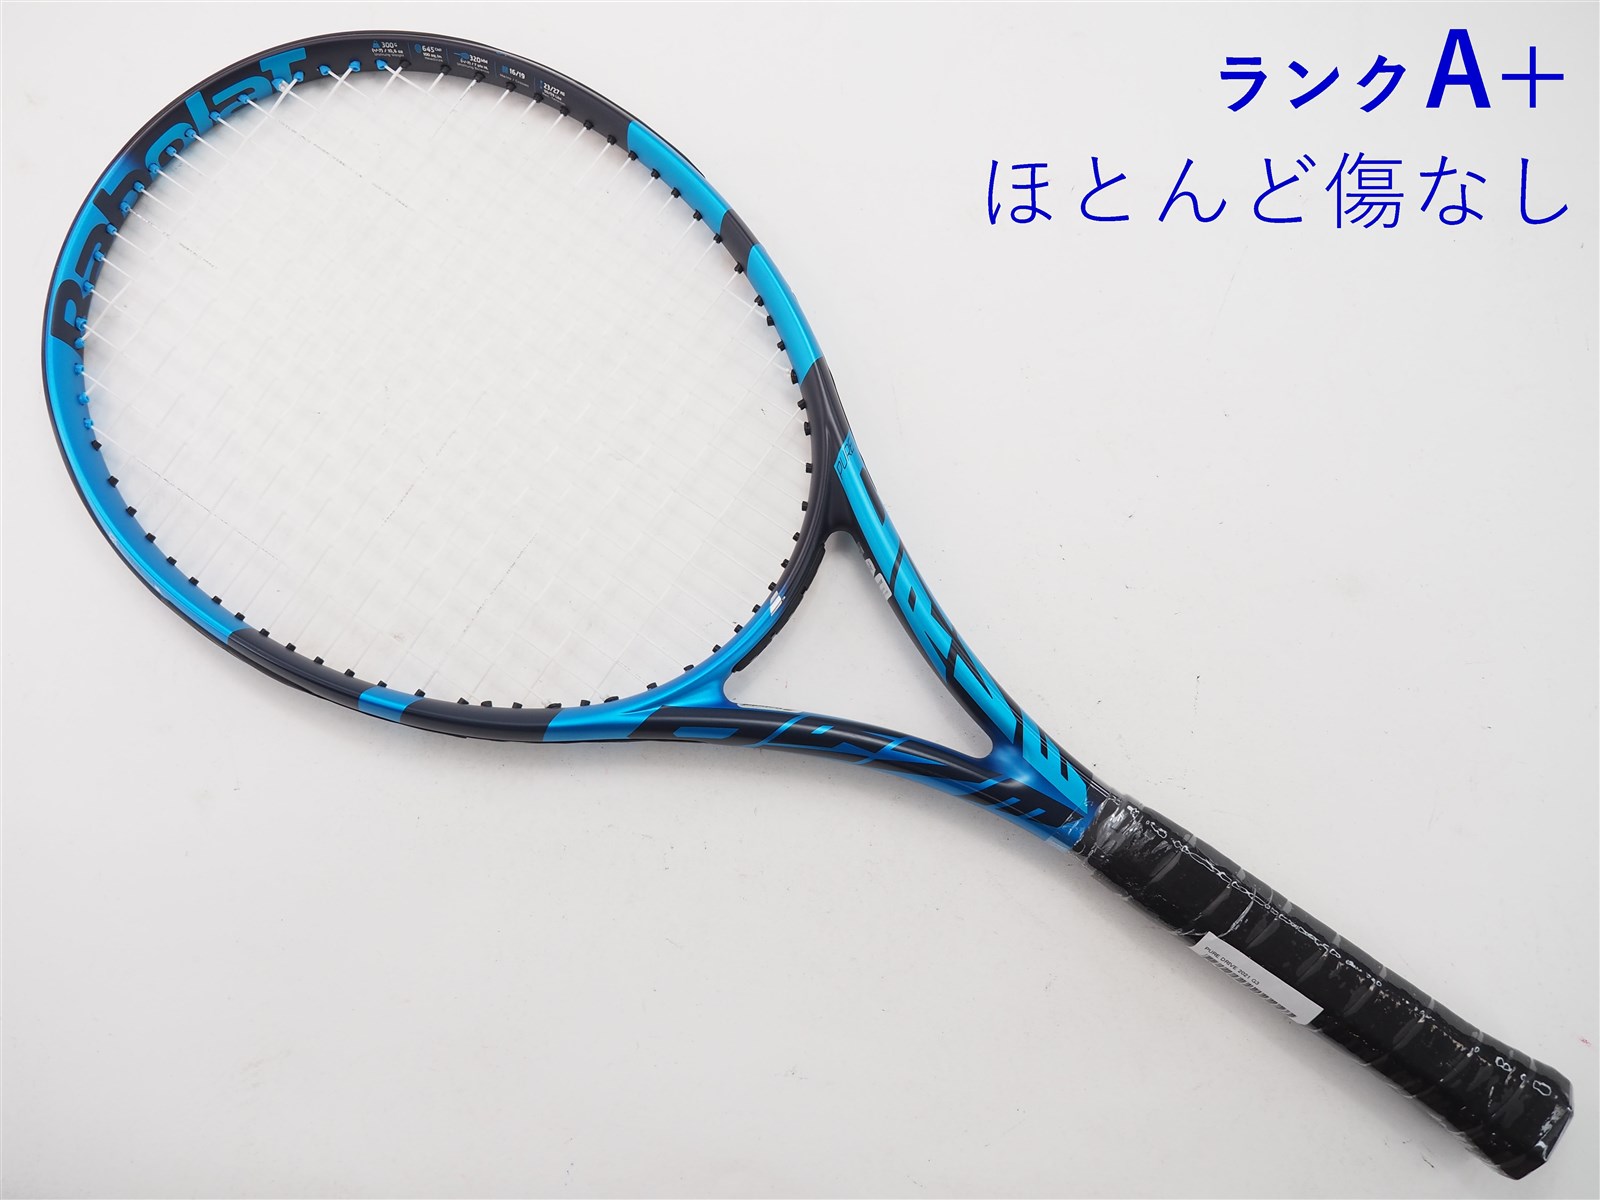 バボラ ピュアドライブ2021 グリップ3 国内正規品 - テニス